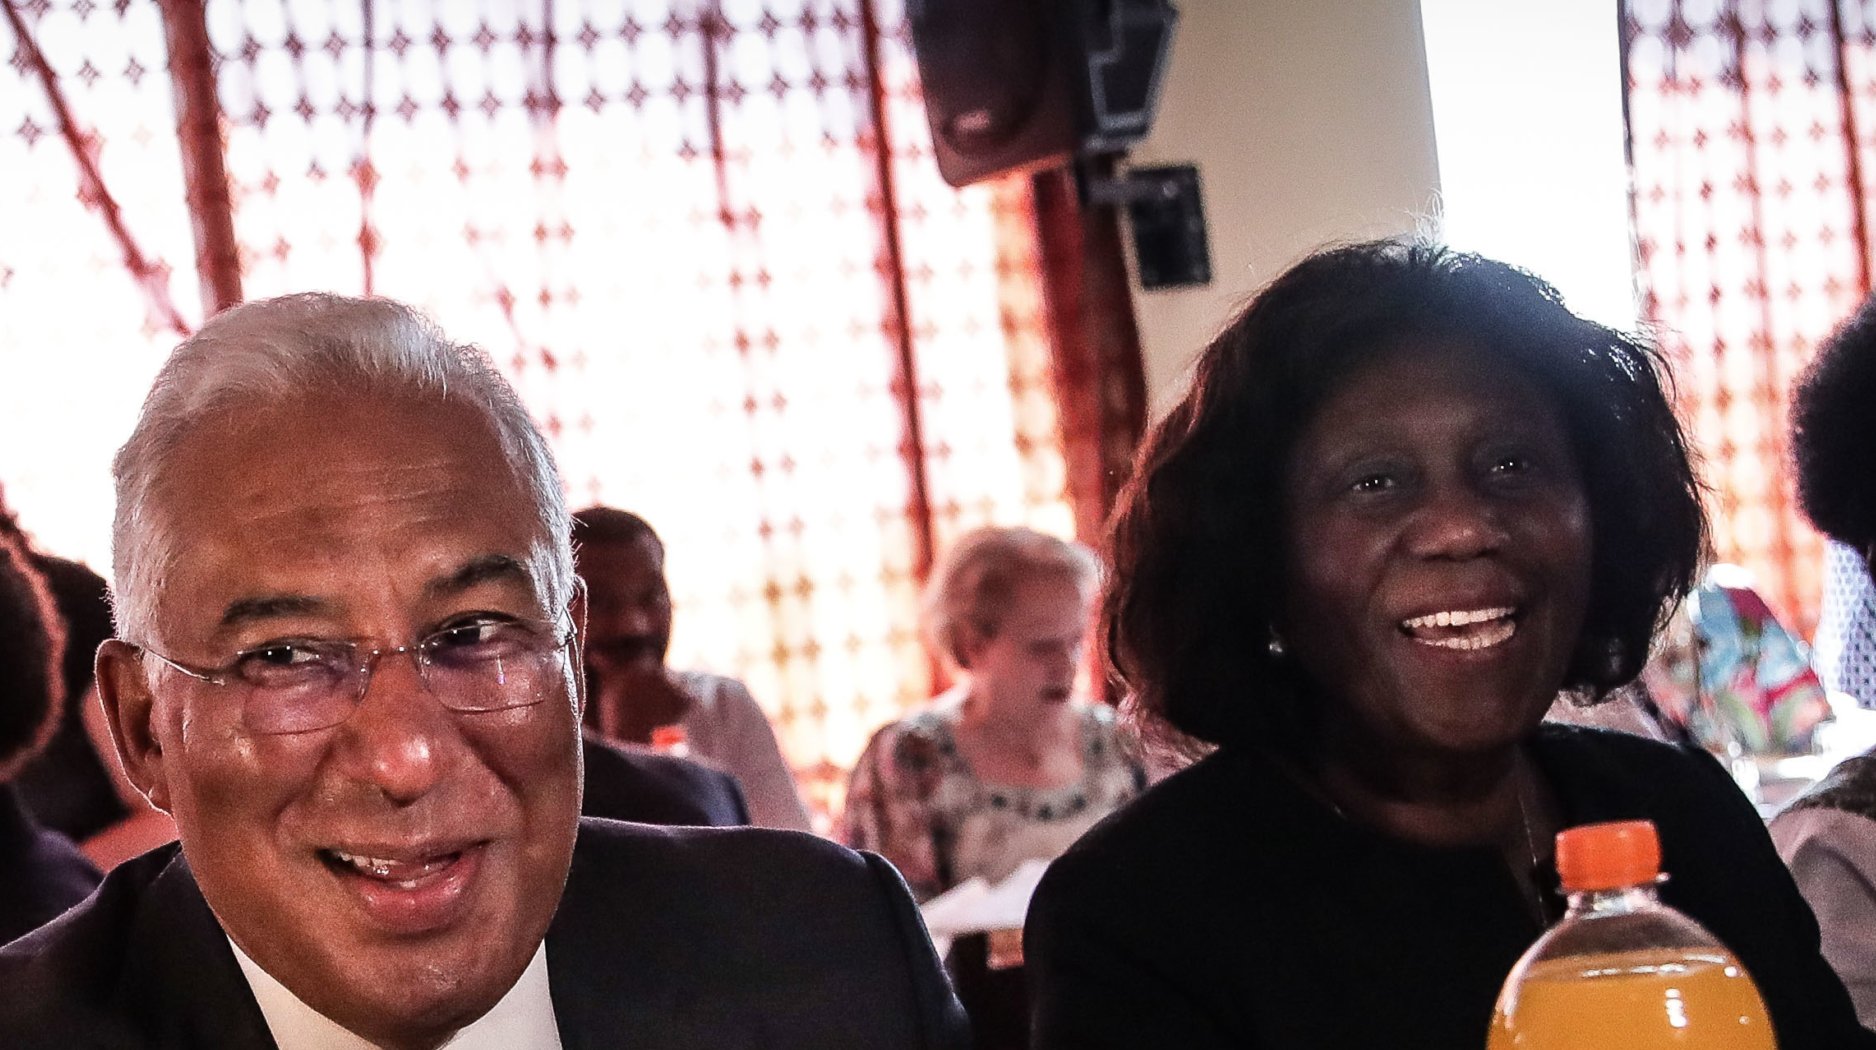 António Costa acompanhado pela vogal do Alto Comissariado para as Migrações, Romualda Fernandes, durante um almoço na Associação de Cabo Verde, na campanha eleitoral para as legislativas 2019.